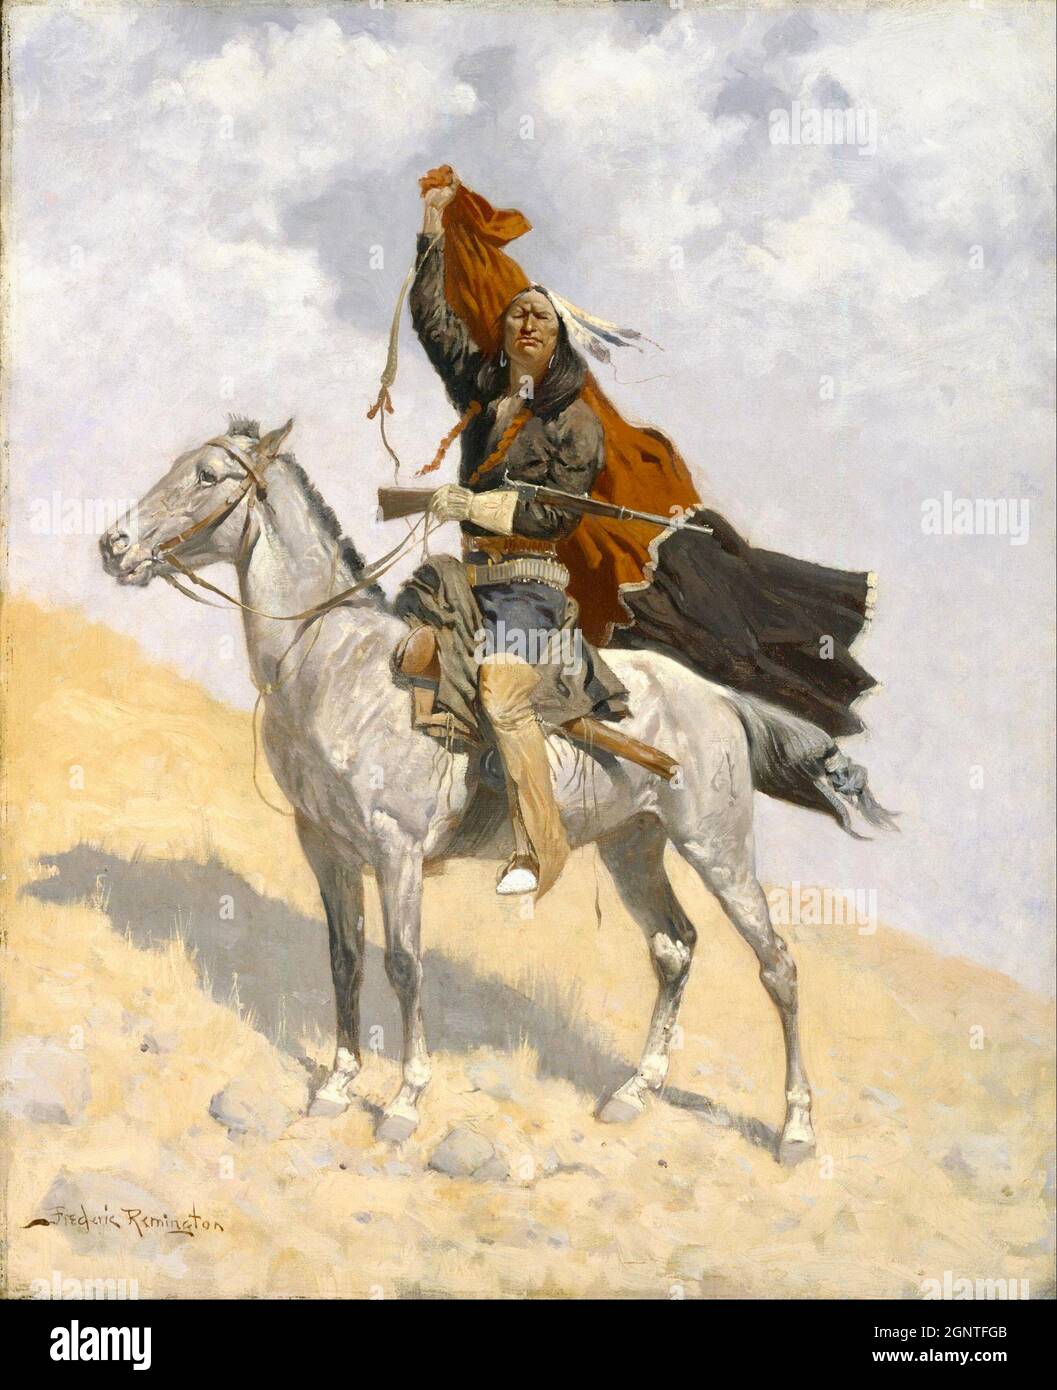 Frederick Remington artwork - The blanket signal - il cavaliere americano nativo di Lone alza una coperta sopra la sua testa come segnale. Foto Stock